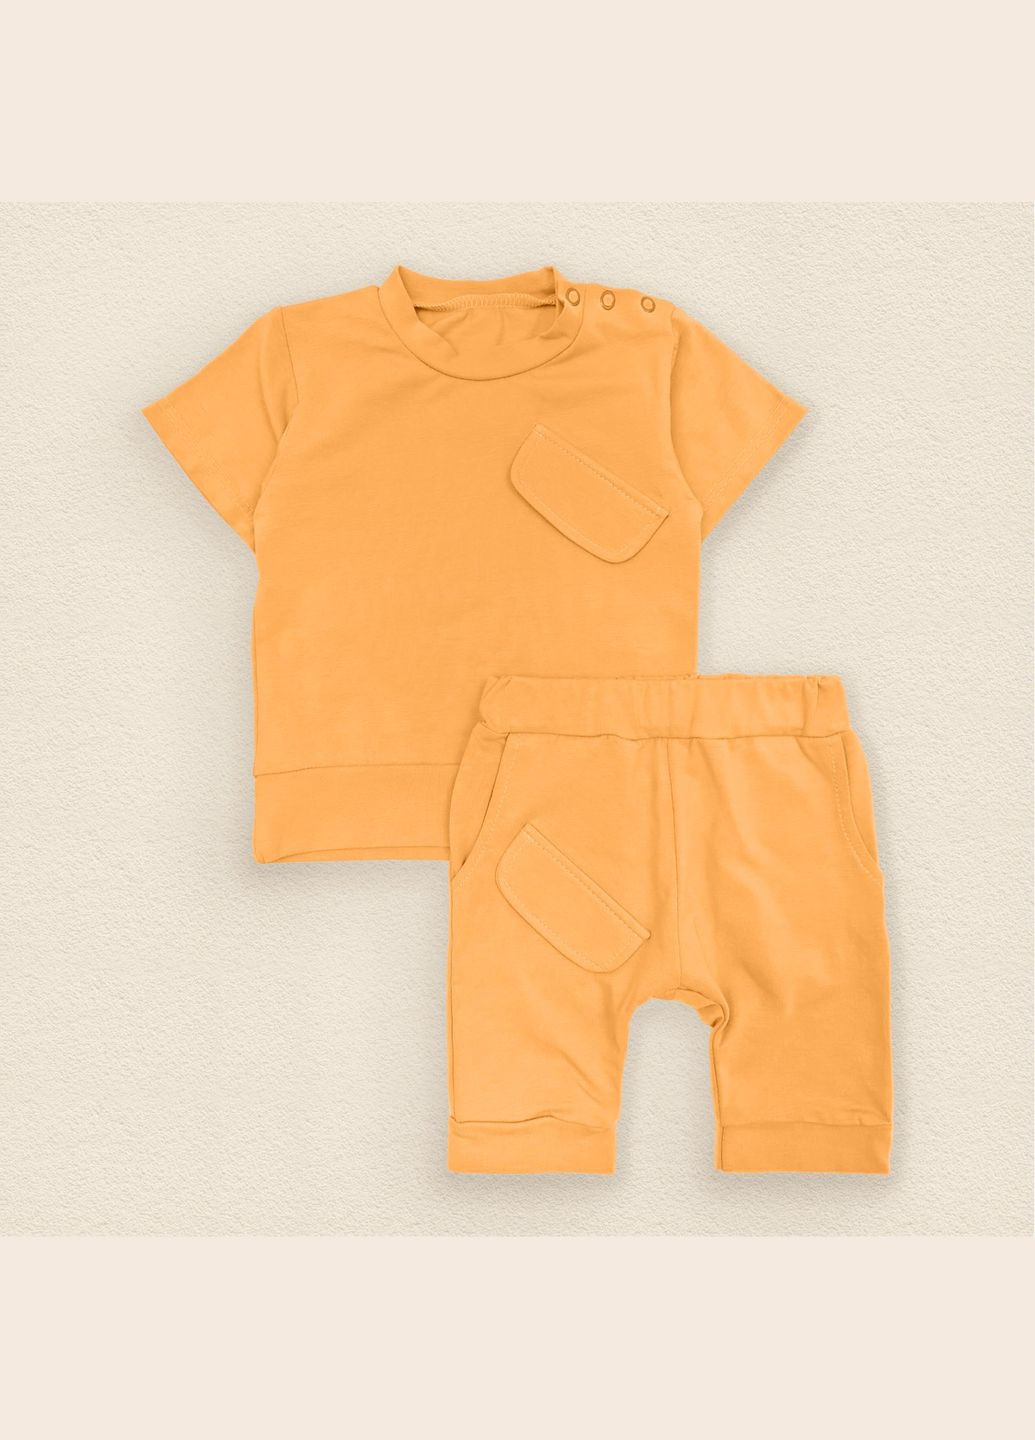 Горчичный летний комплект на лето футболка и шорты dexter`s orange горчичный dexter's